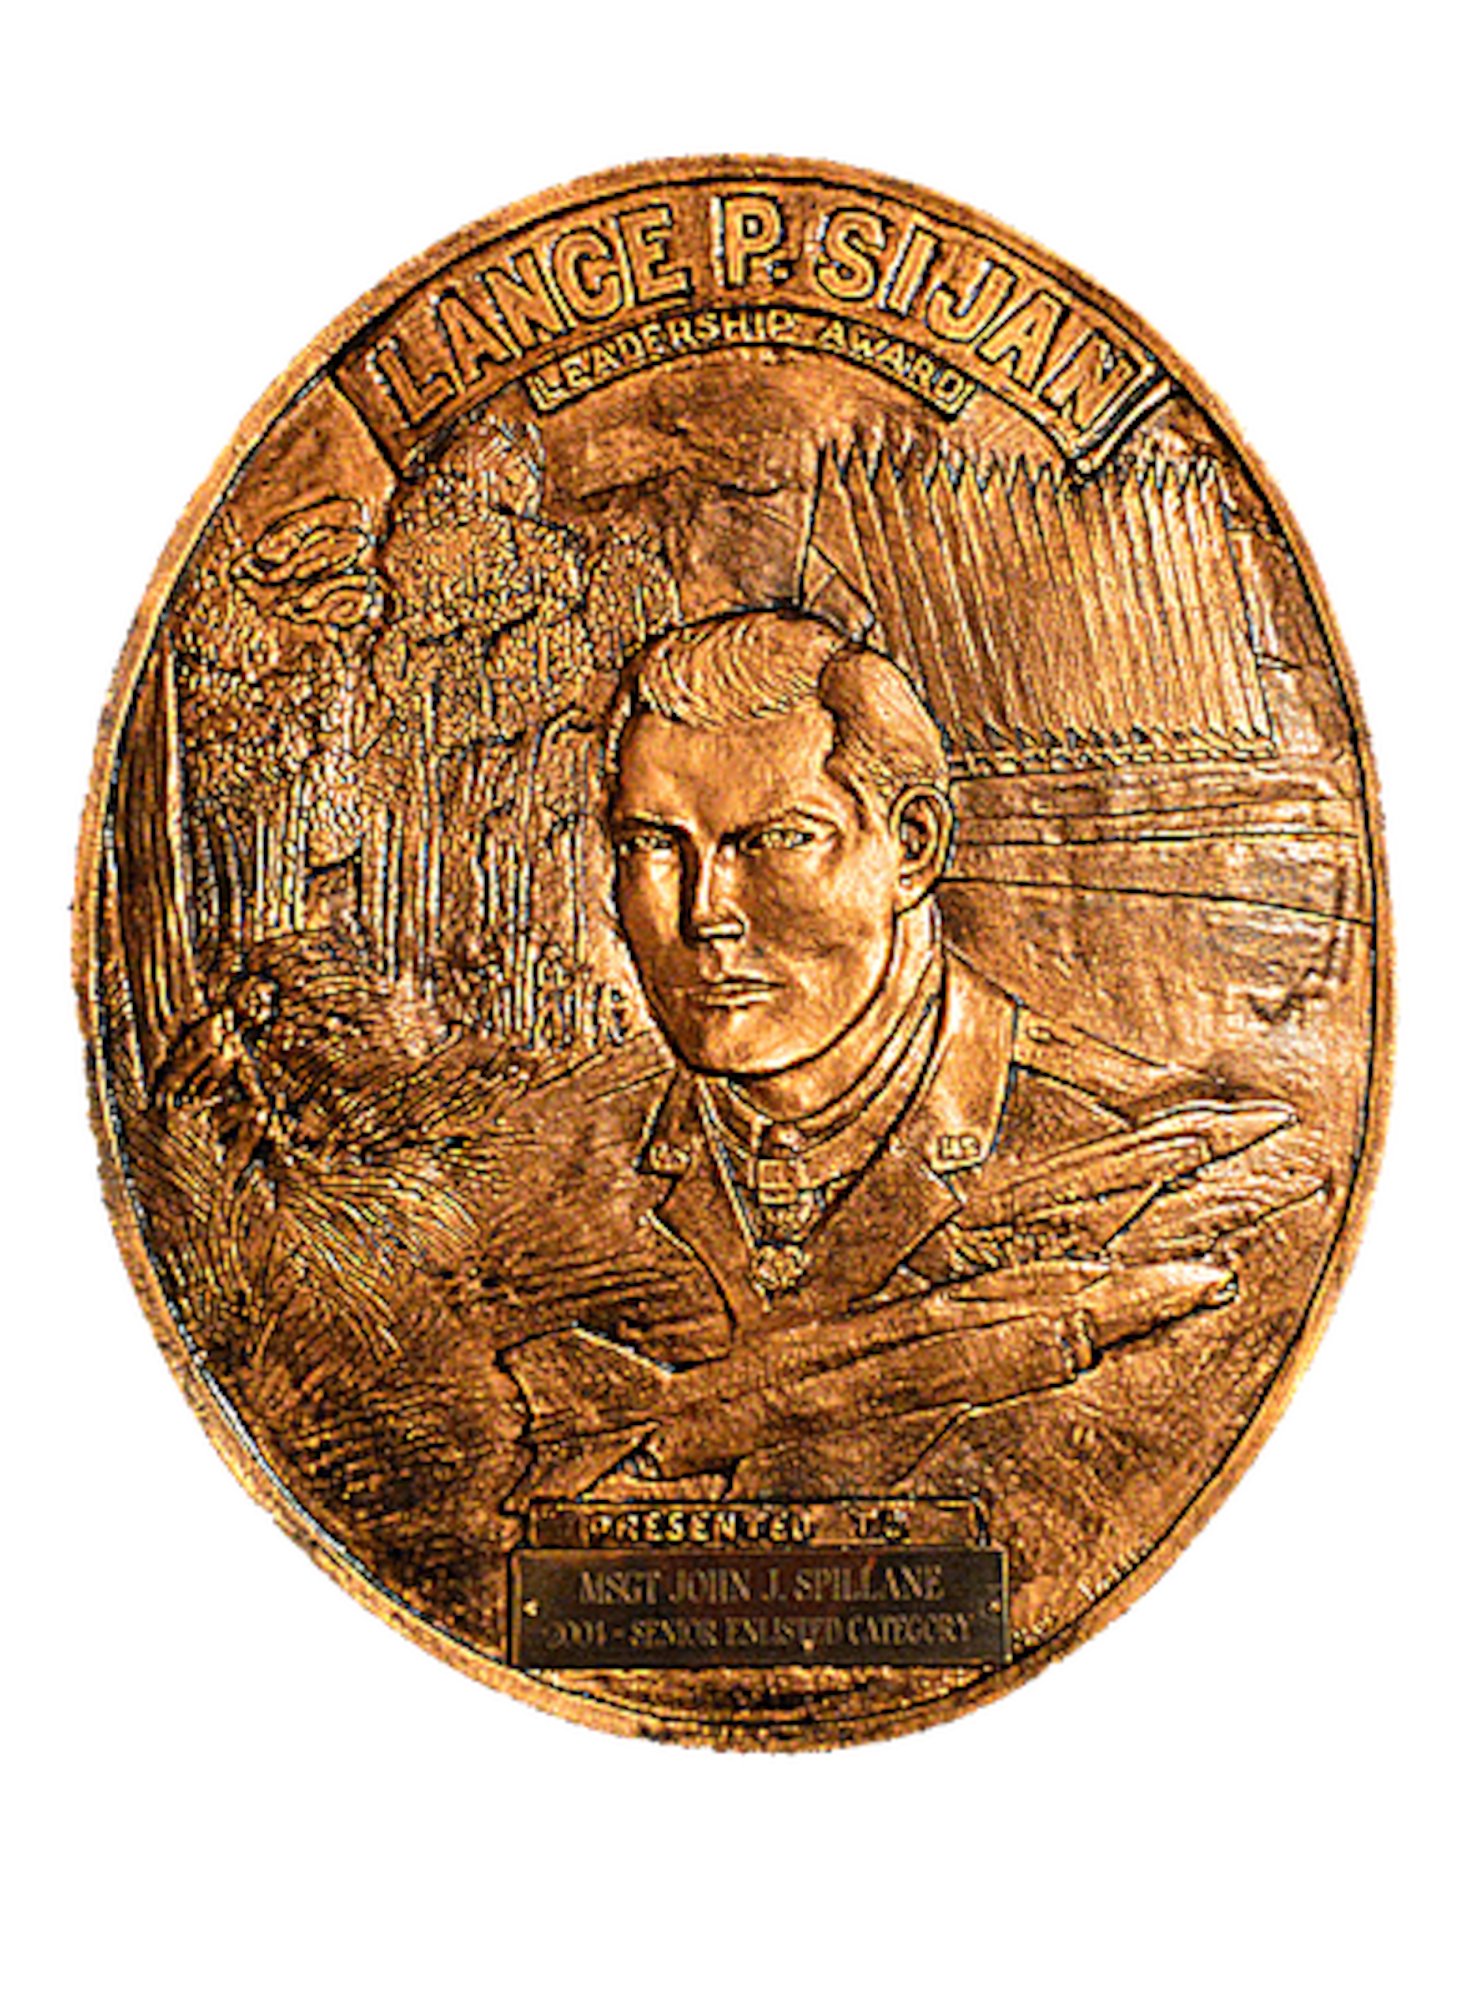 Lance P. Sijan Award